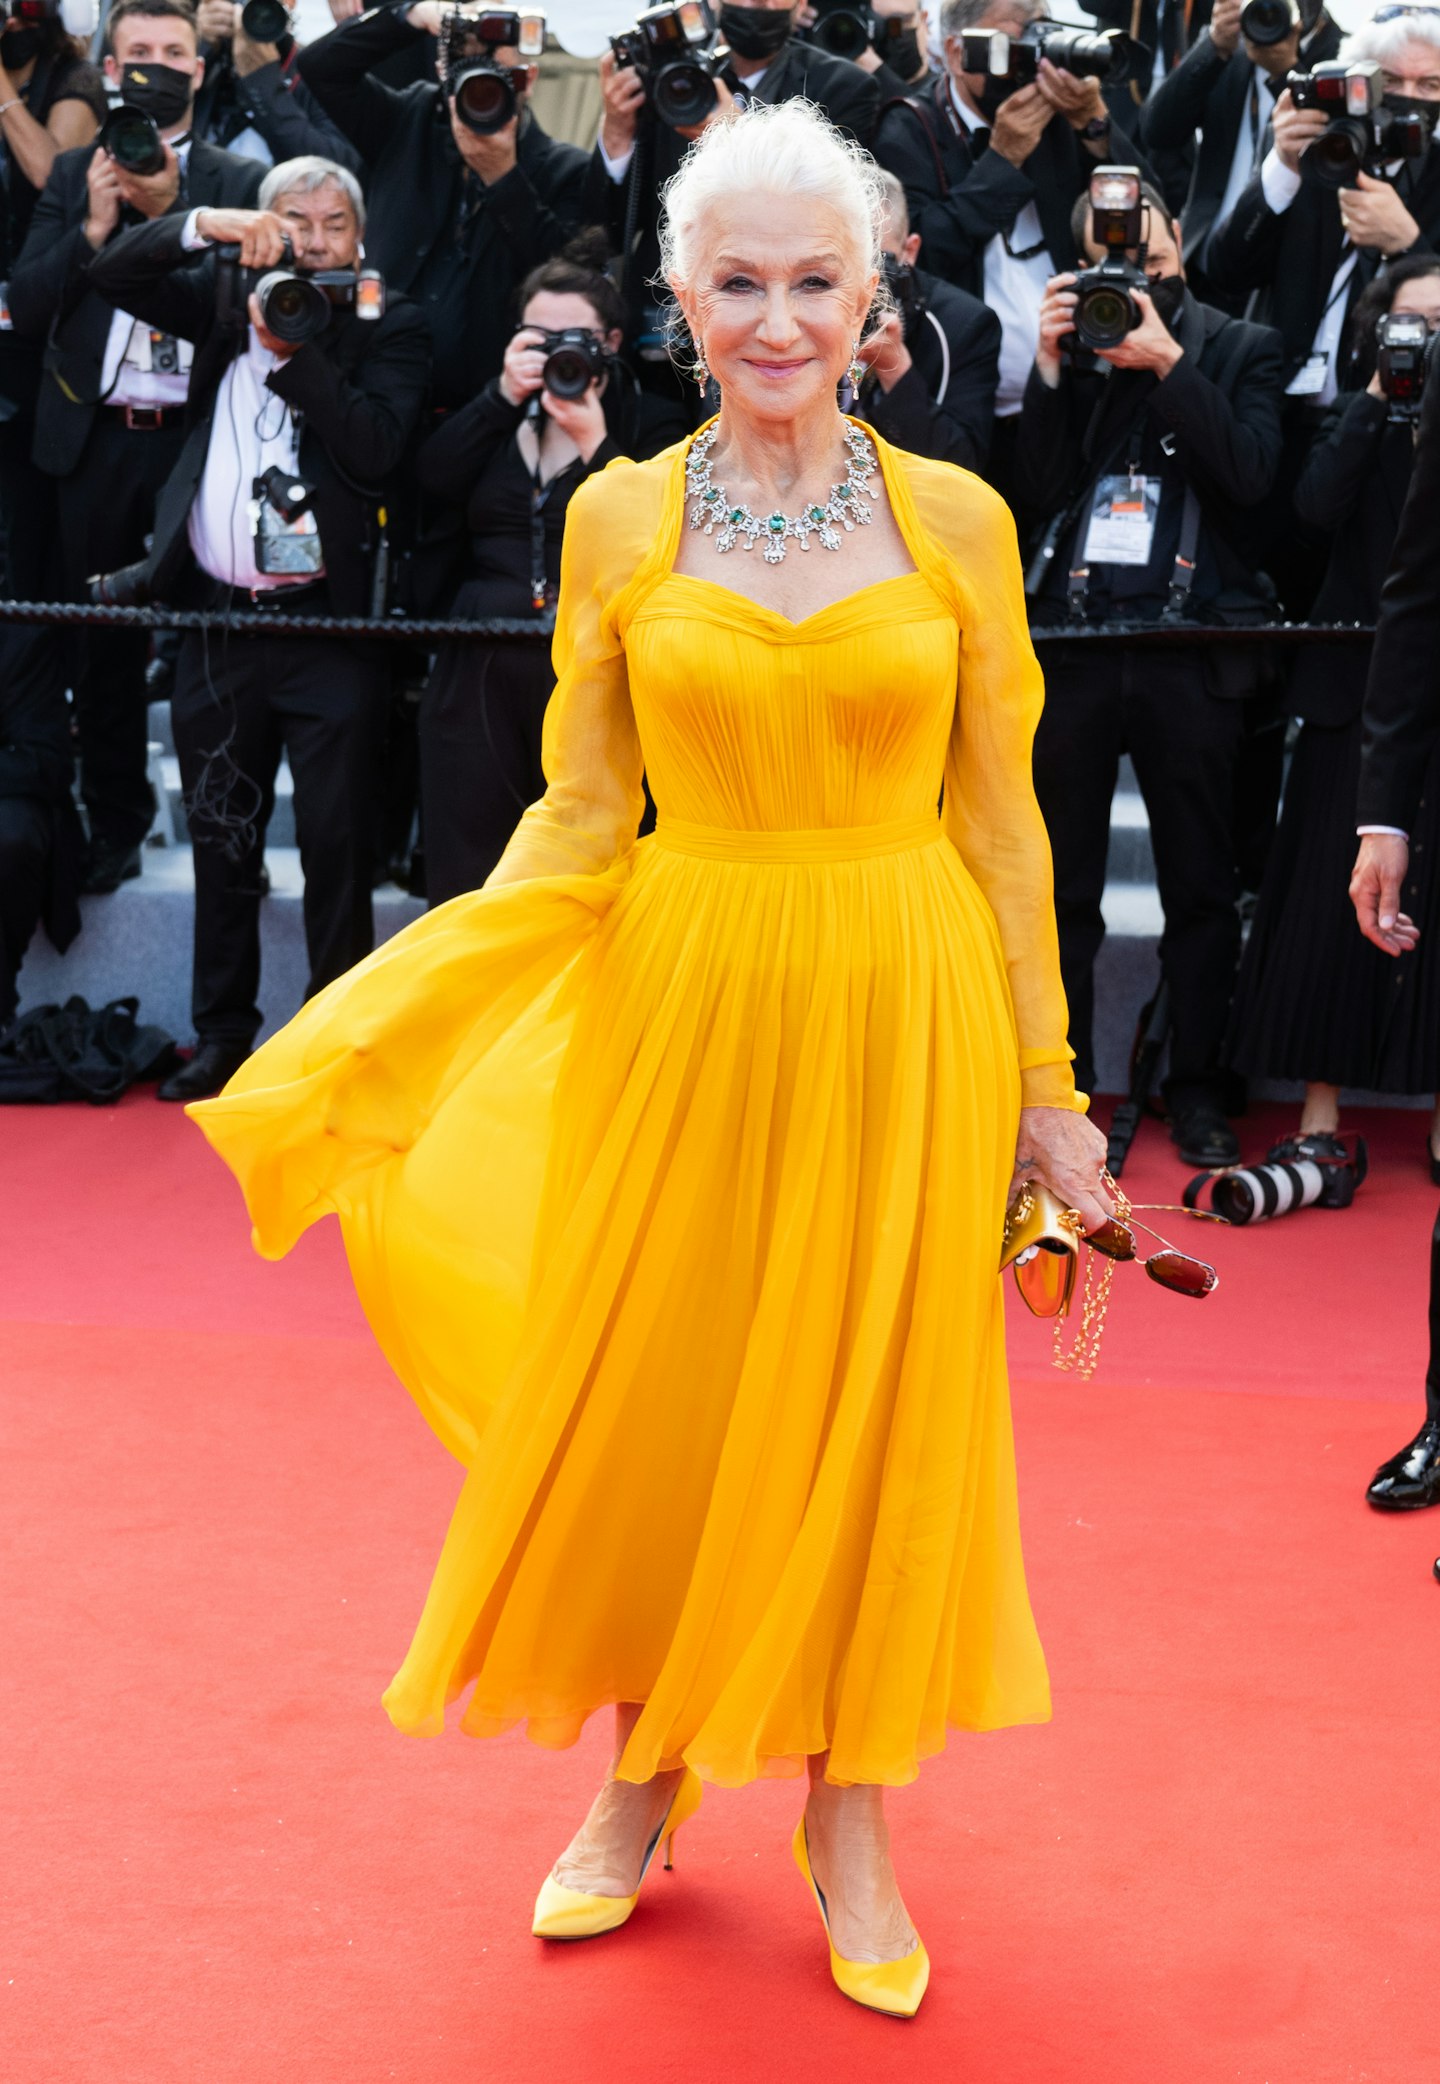 Helen Mirren in a Dolce and Gabbana dress